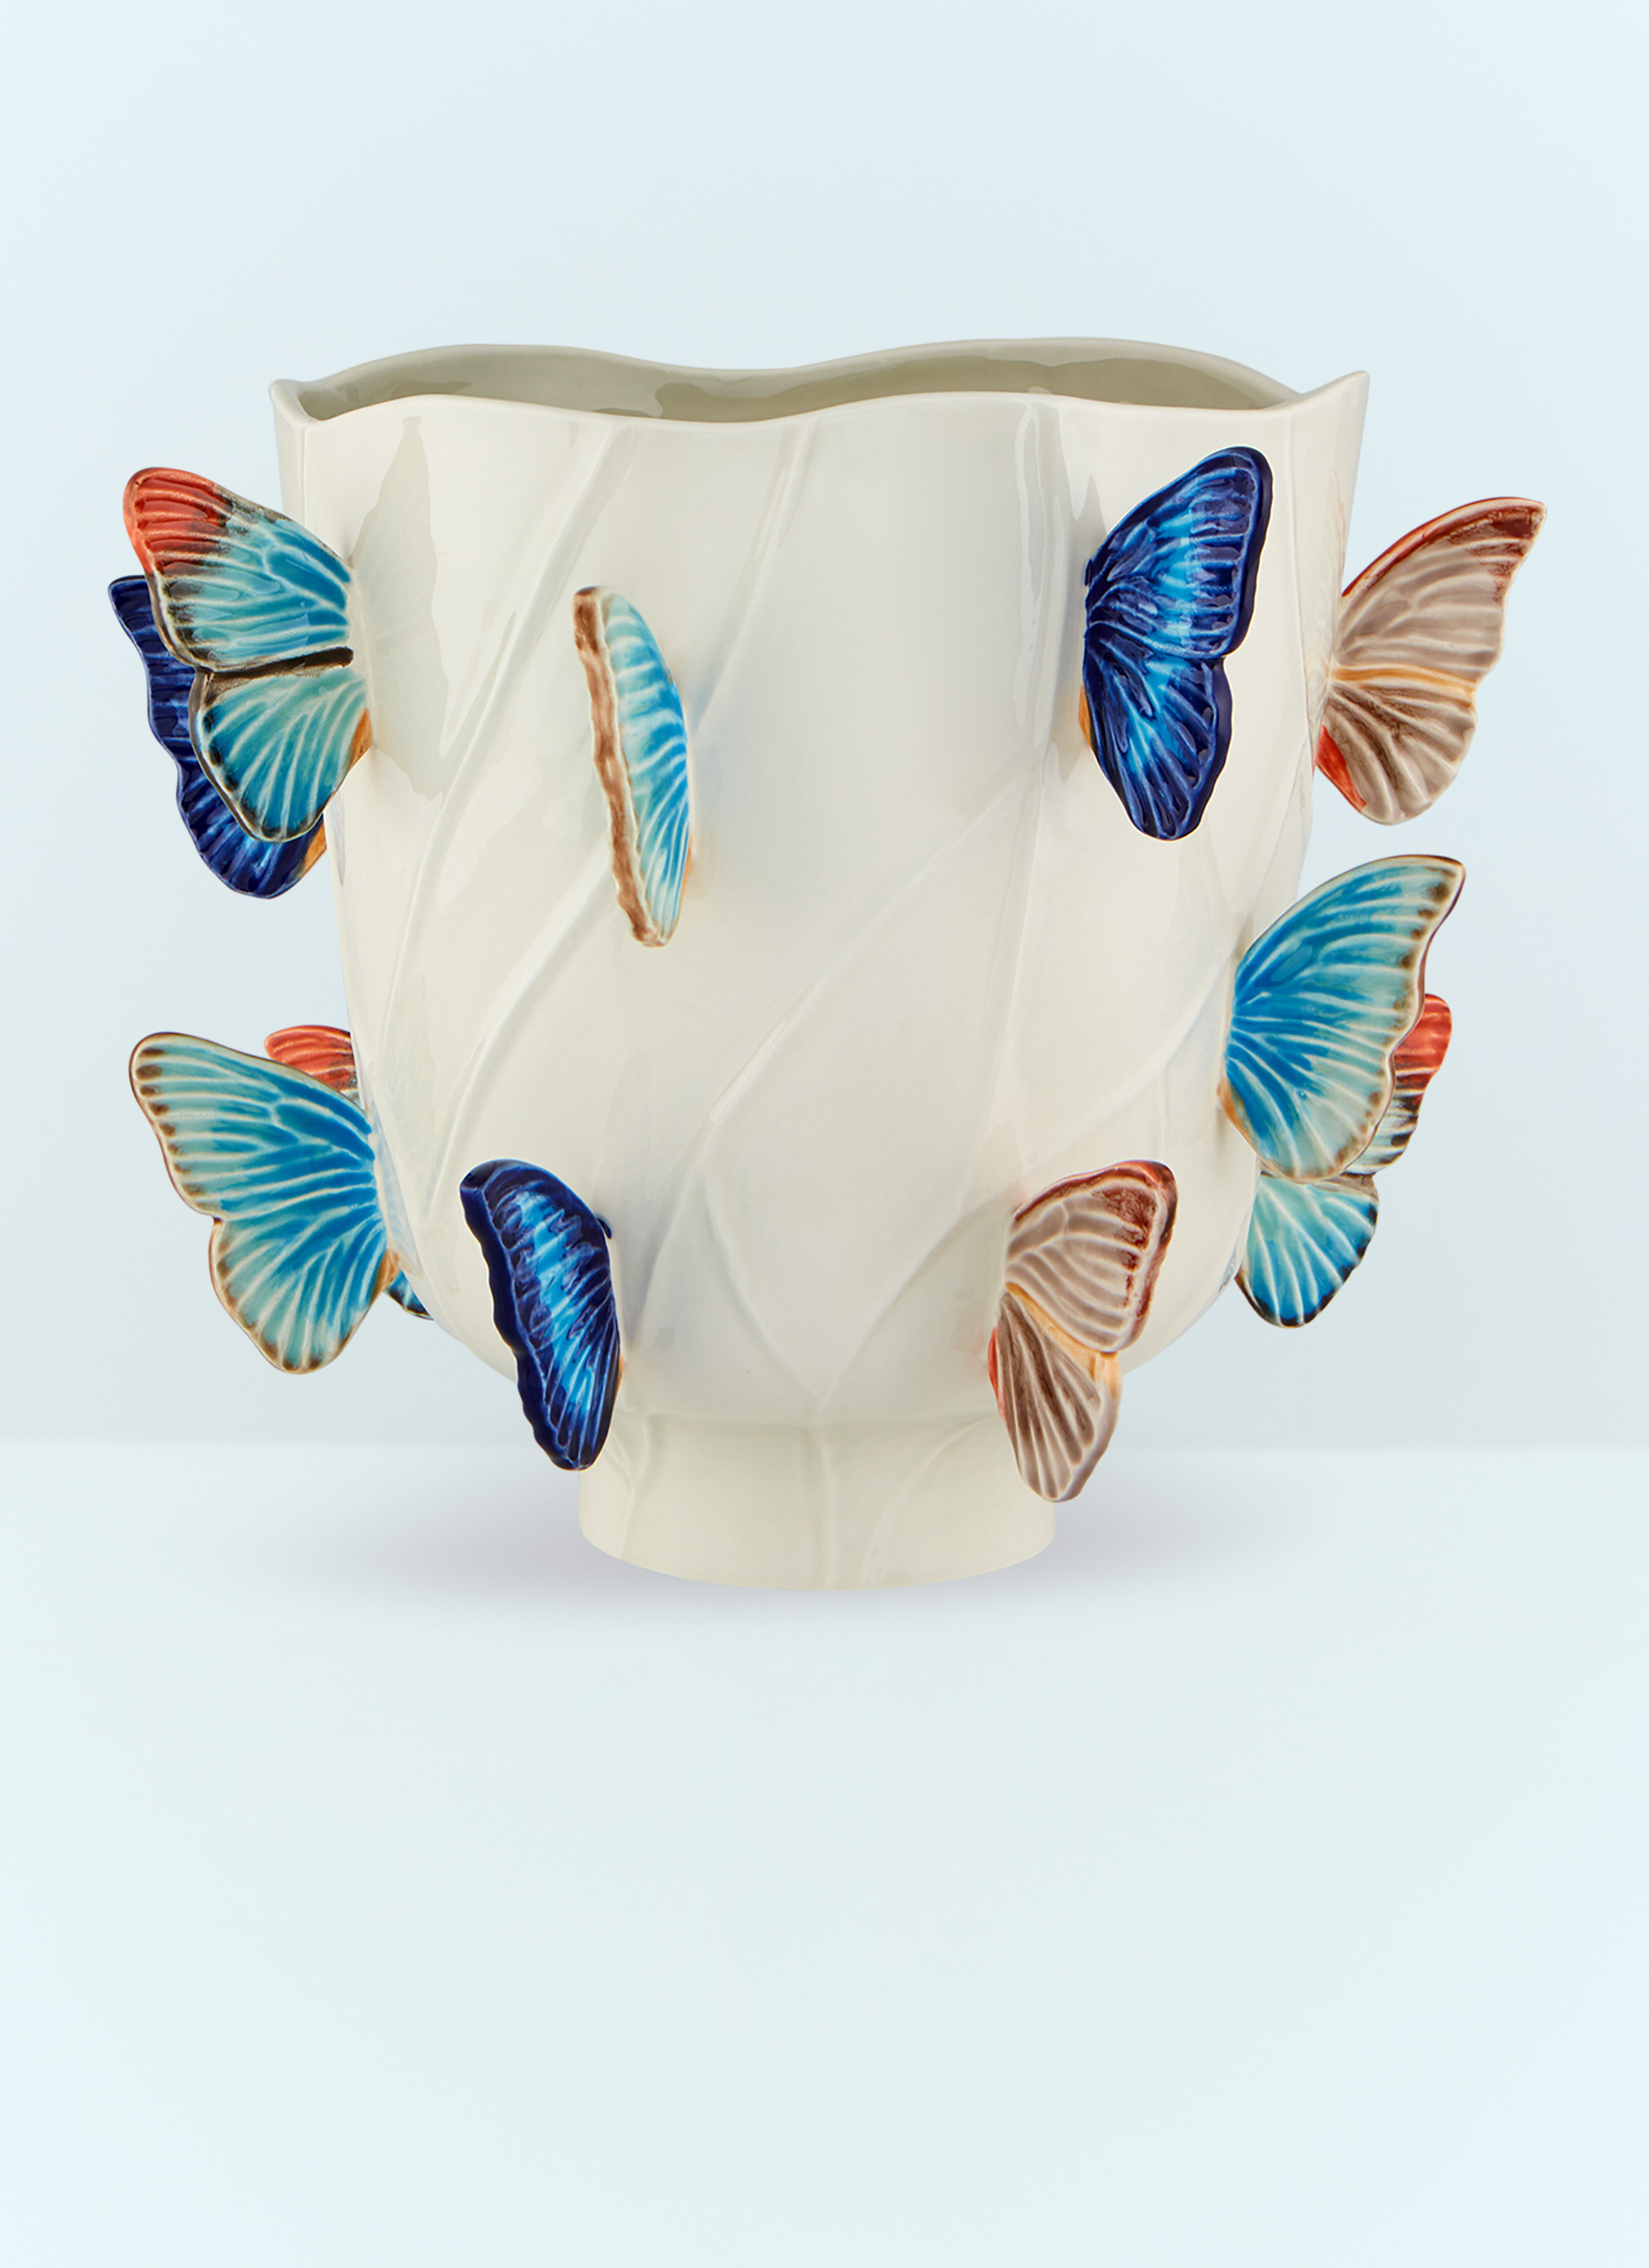 Polspotten Cloudy Butterflies Large Vase Multicolour wps0691145